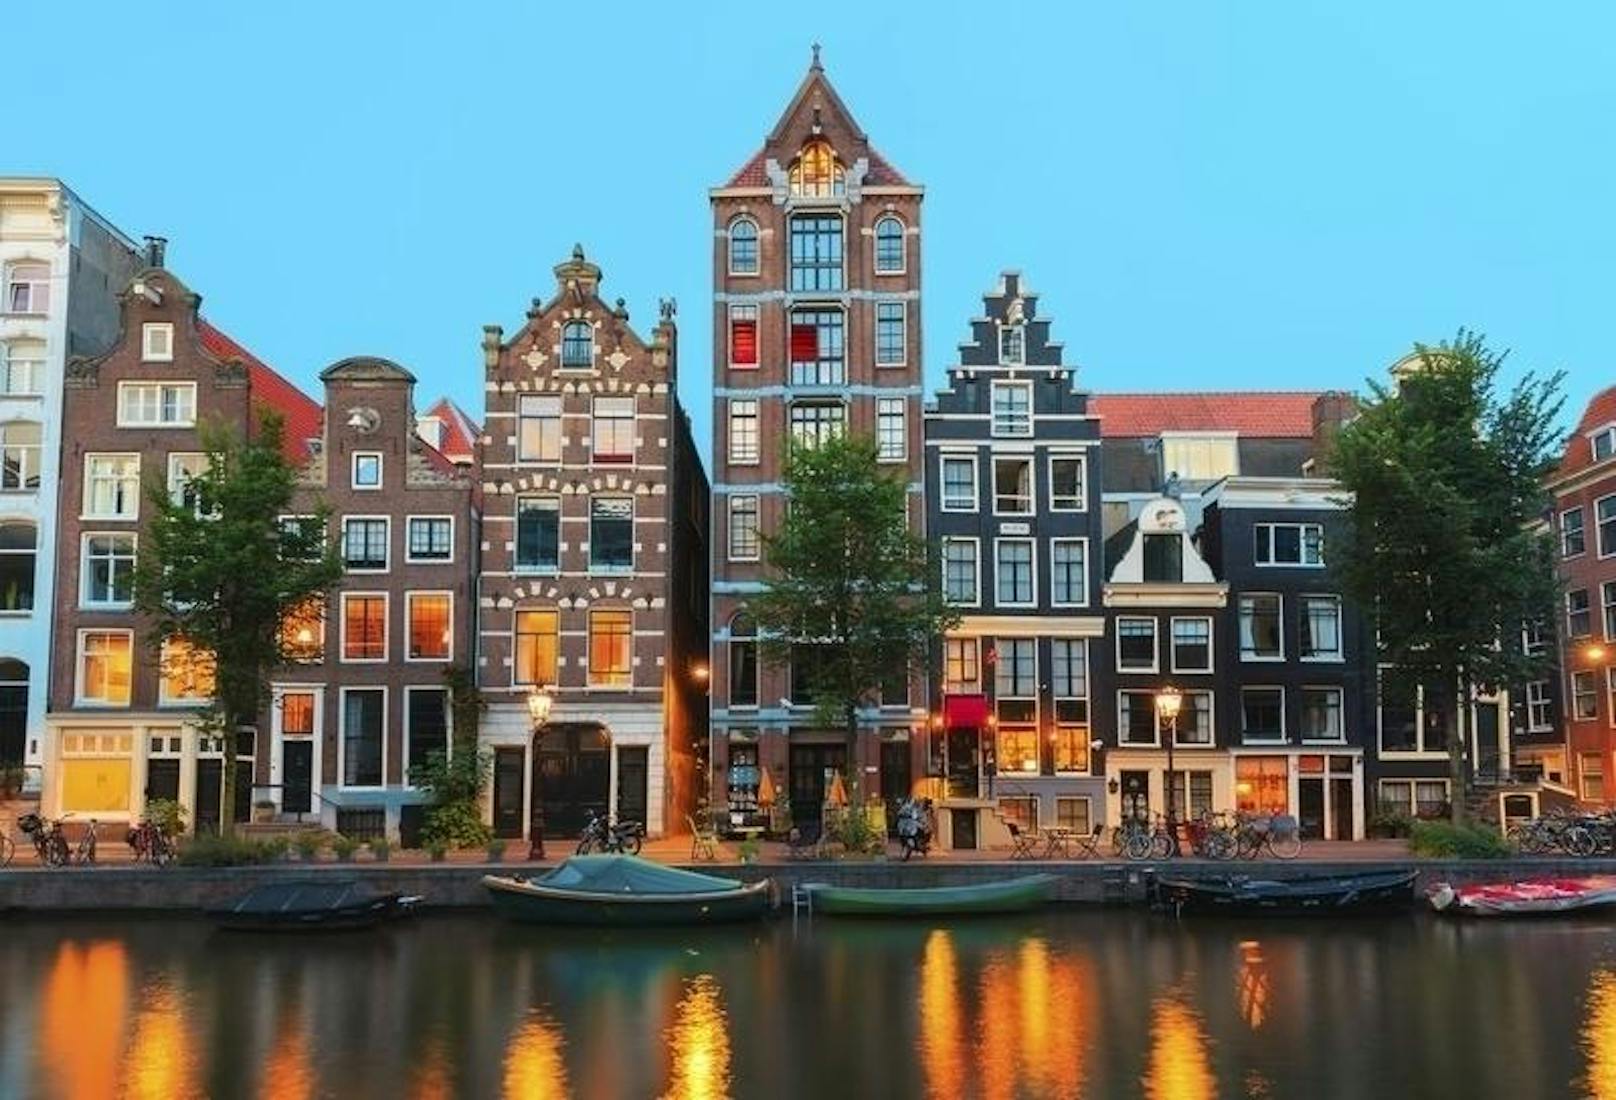 <b>Wassermann - Amsterdam, Niederlande</b>
Wassermänner sind dafür bekannt, Freigeister und voller Enthusiasmus zu sein und auch 2018 erwartet euch ein neues Jahr voller Abenteuer auf der Suche nach Autonomie und Kreativität! Um eure Träume zu verwirklichen, senden euch die Sterne diesmal in die aufregende niederländische Hauptstadt Amsterdam. Das pulsierende Kapitol bietet euch an jeder Ecke neue, spannende Erlebnisse und überwältigende Emotionen. Hier könnt ihr euch selbst neu entdecken und euren Lebenspfad neu ausrichten. Worauf wartet ihr noch? Auf geht's ins Venedig des Nordens!